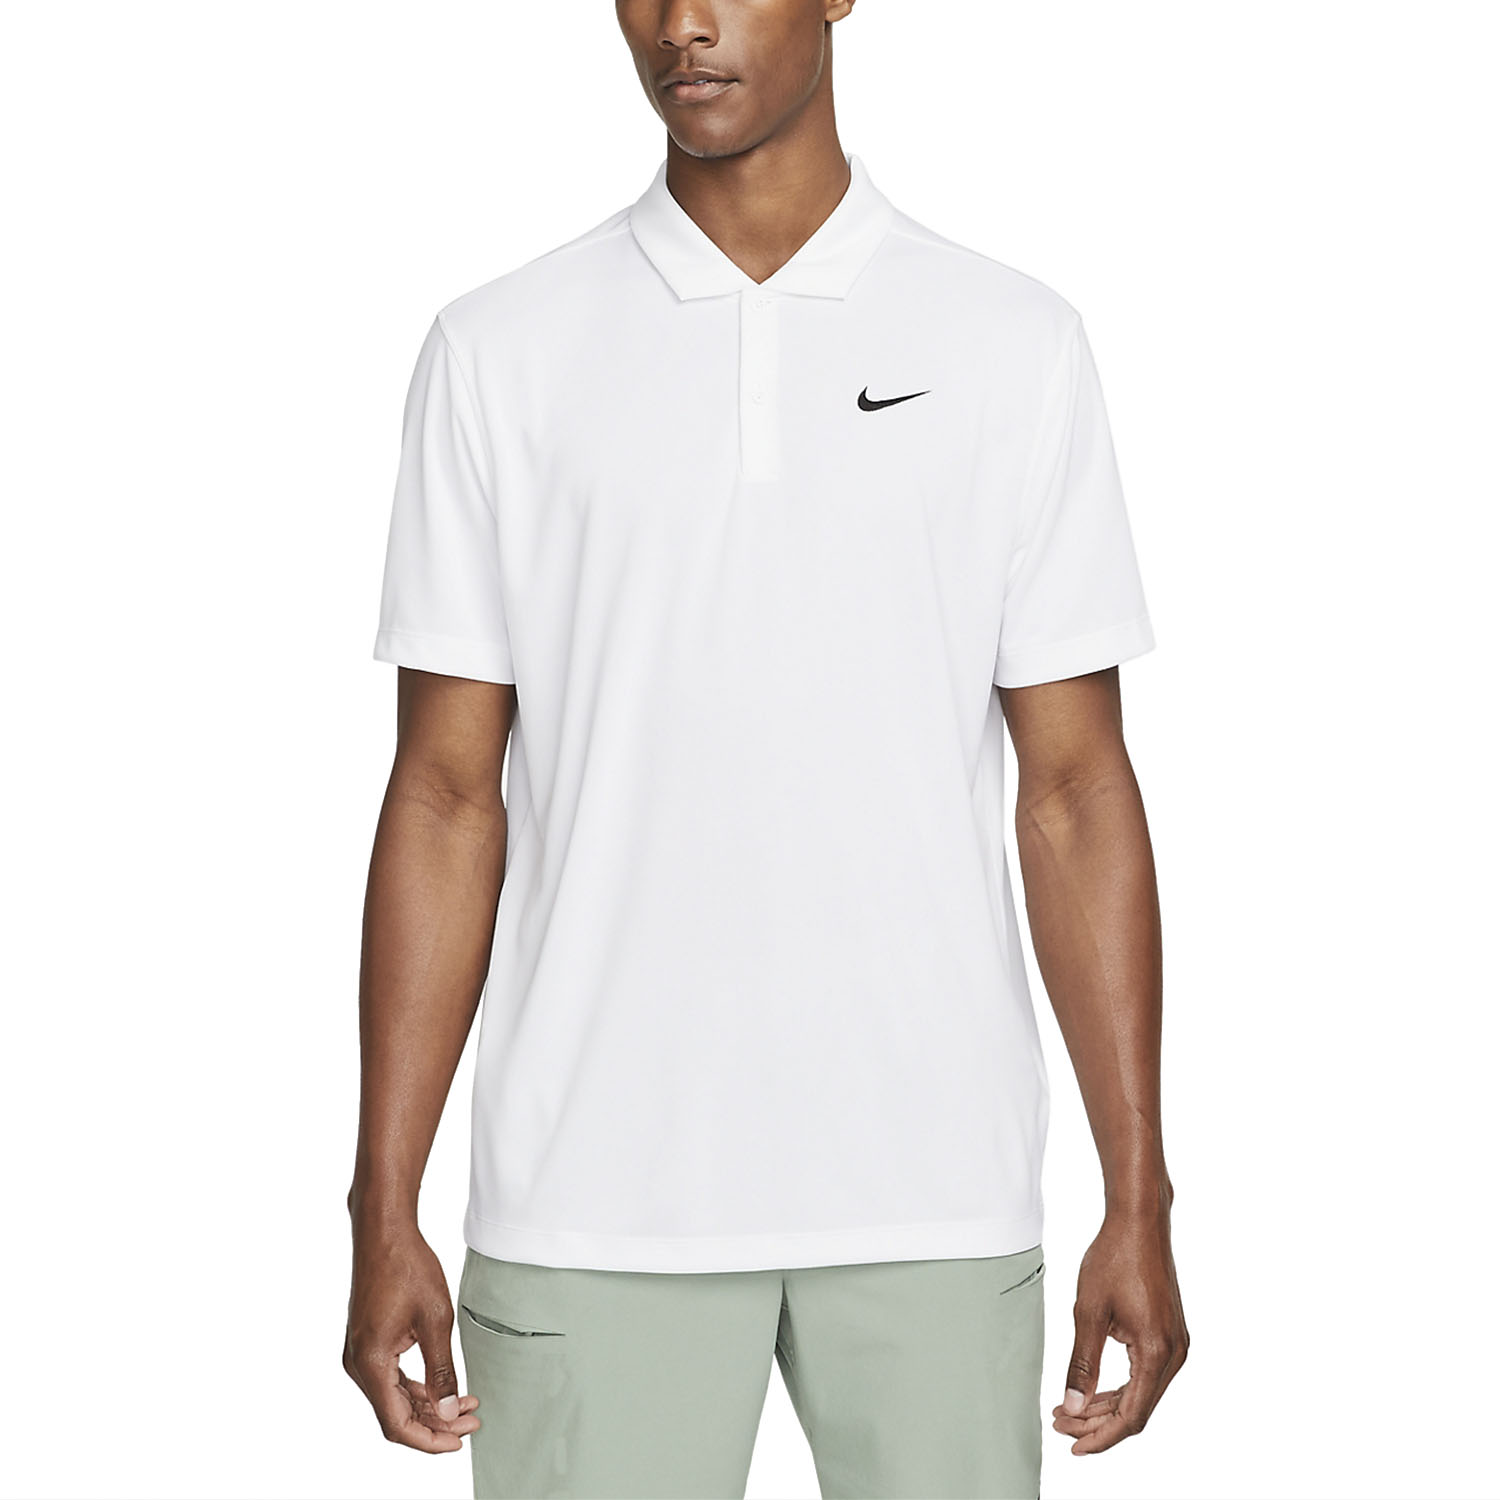 Incompatible De otra manera Preciso Nike Dri-FIT Solid Logo Polo de Tenis Hombre - White/Black